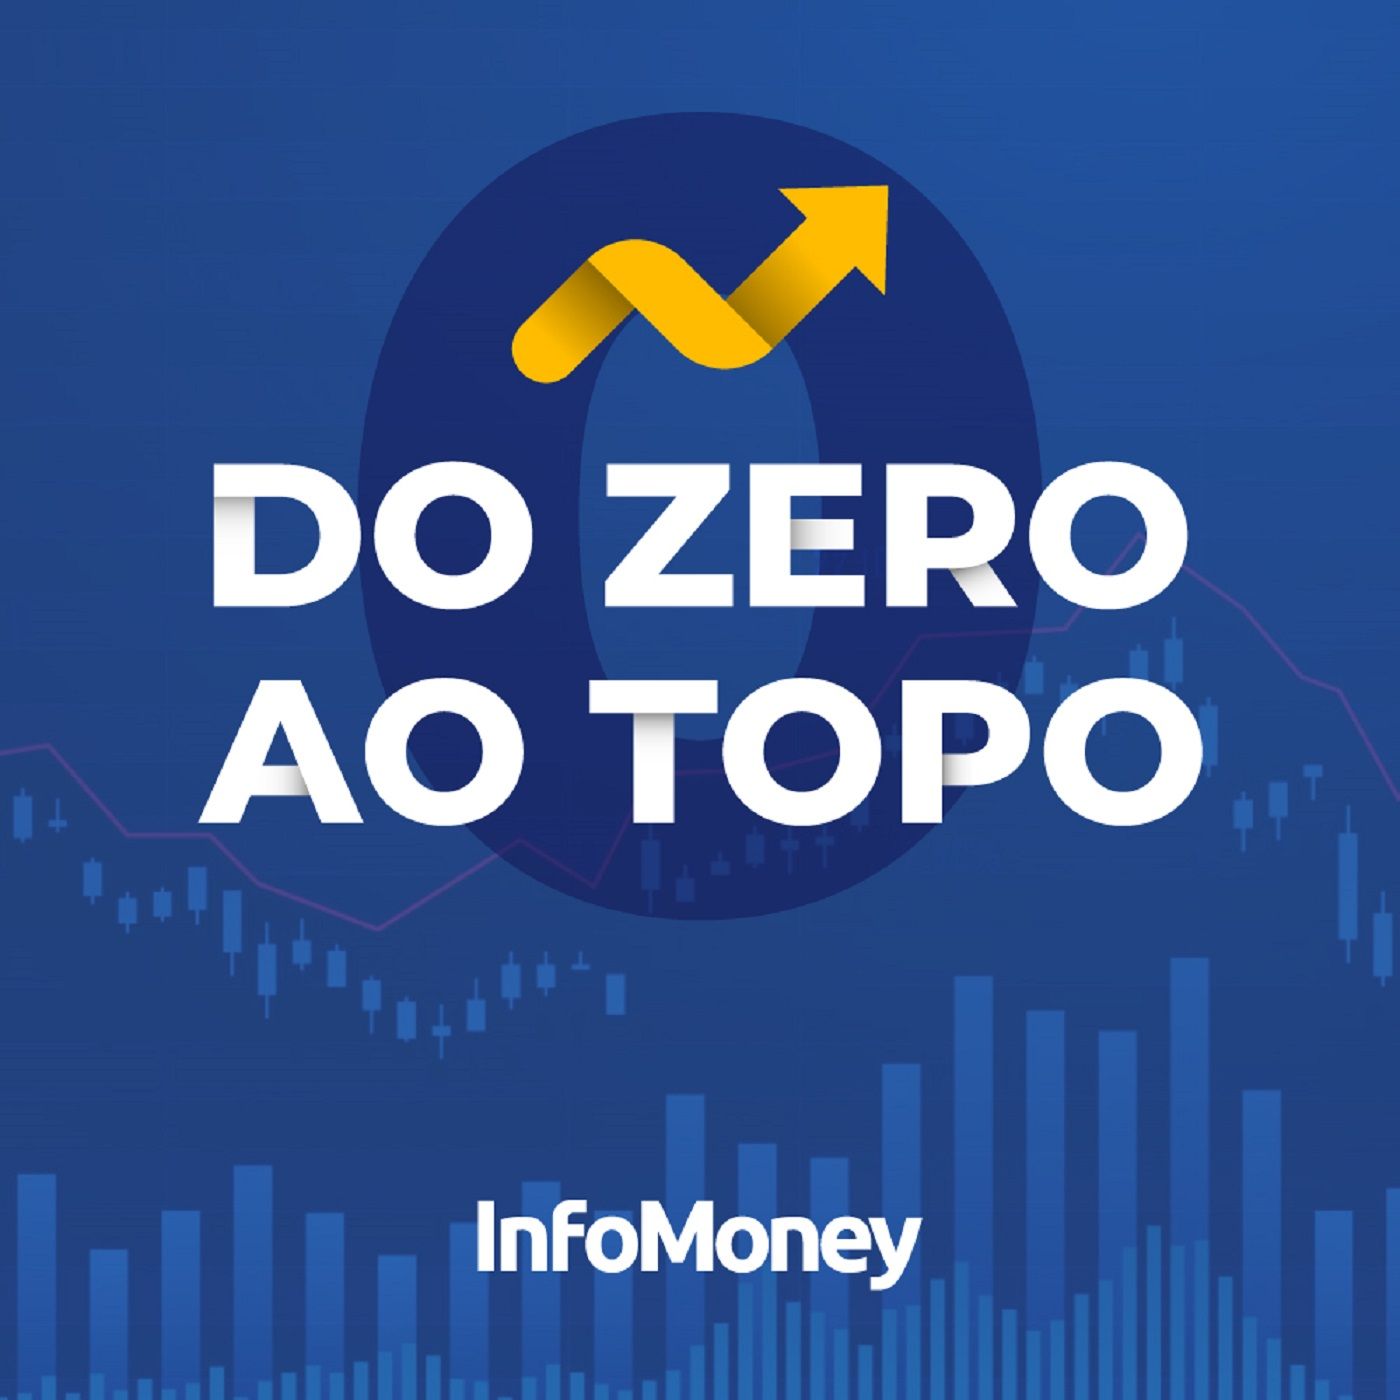 #15 - XP Investimentos: a história de Guilherme Benchimol até enfrentar os bancões